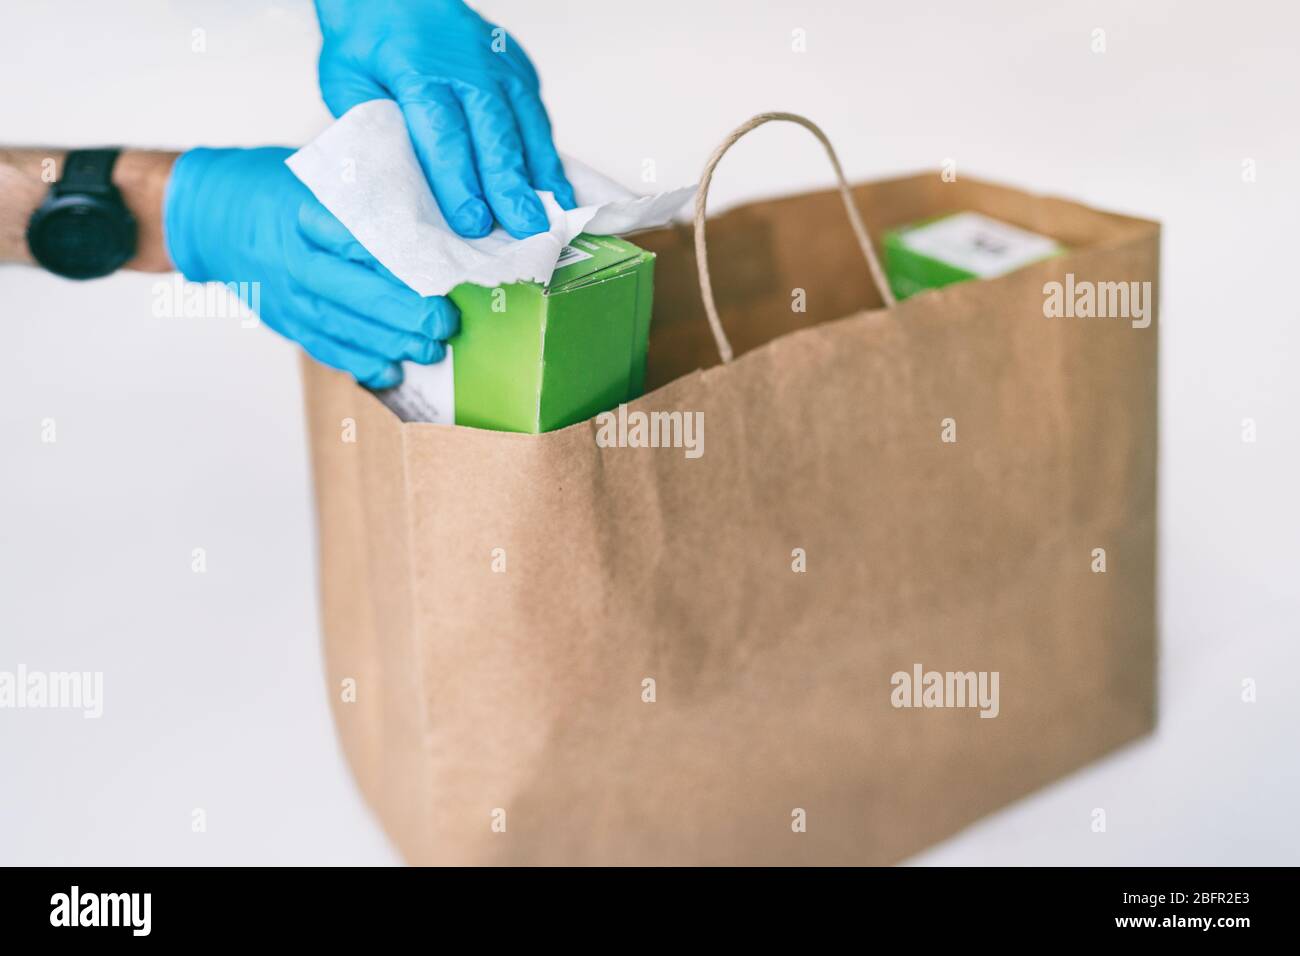 Désinfection de la livraison de nourriture à domicile désinfection des emballages de sacs de shopping en ligne avec des lingettes désinfectantes. Désinfecter les surfaces des emballages avec des gants. COVID-19 hygiène préventive. Banque D'Images